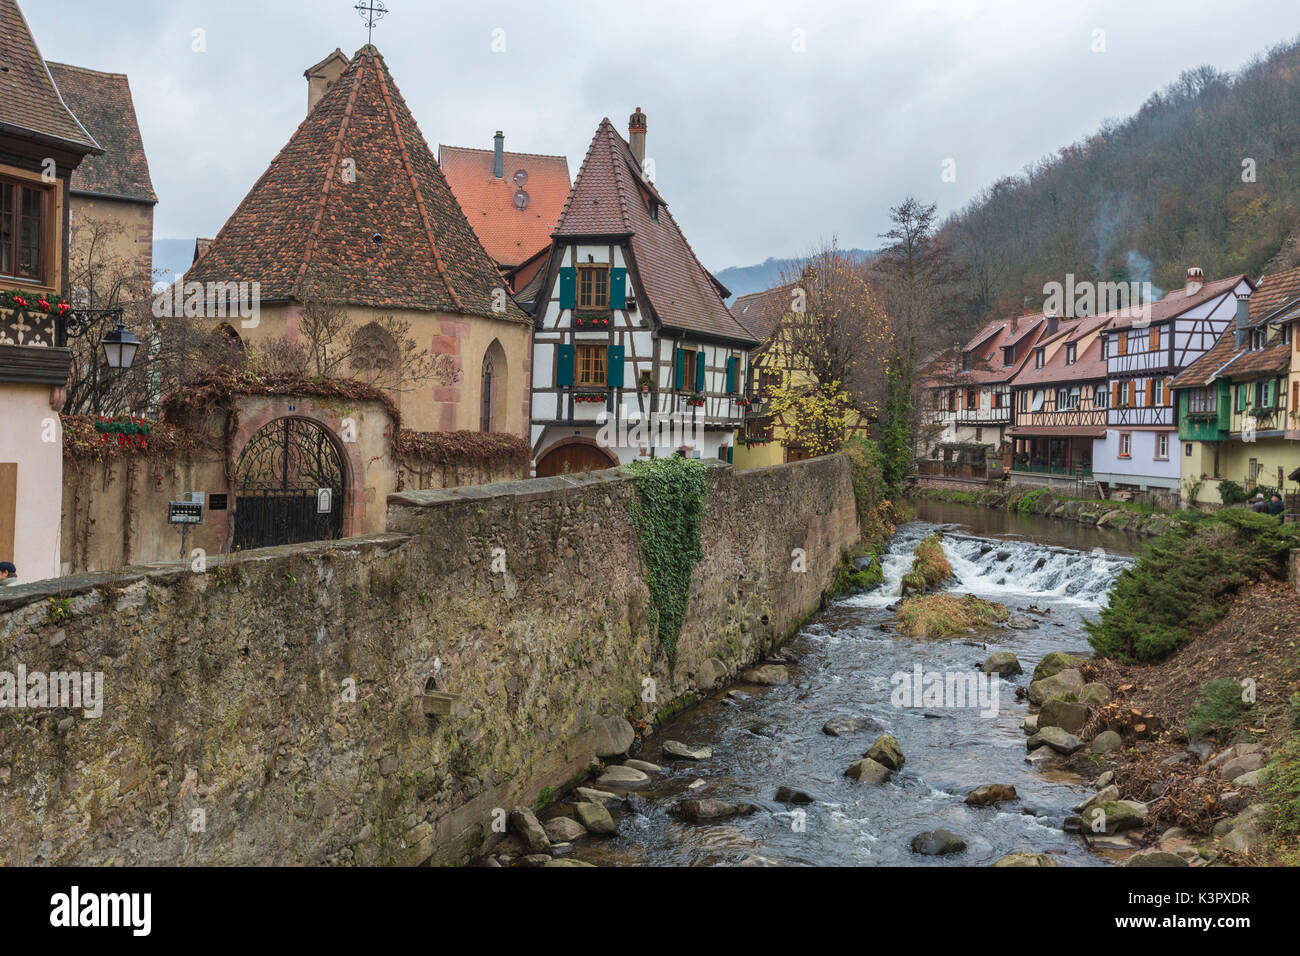 Architettura tipica della vecchia città medievale e il ponte sul fiume Weiss Kaysersberg Haut-Rhin dipartimento Alsace Francia Europa Foto Stock